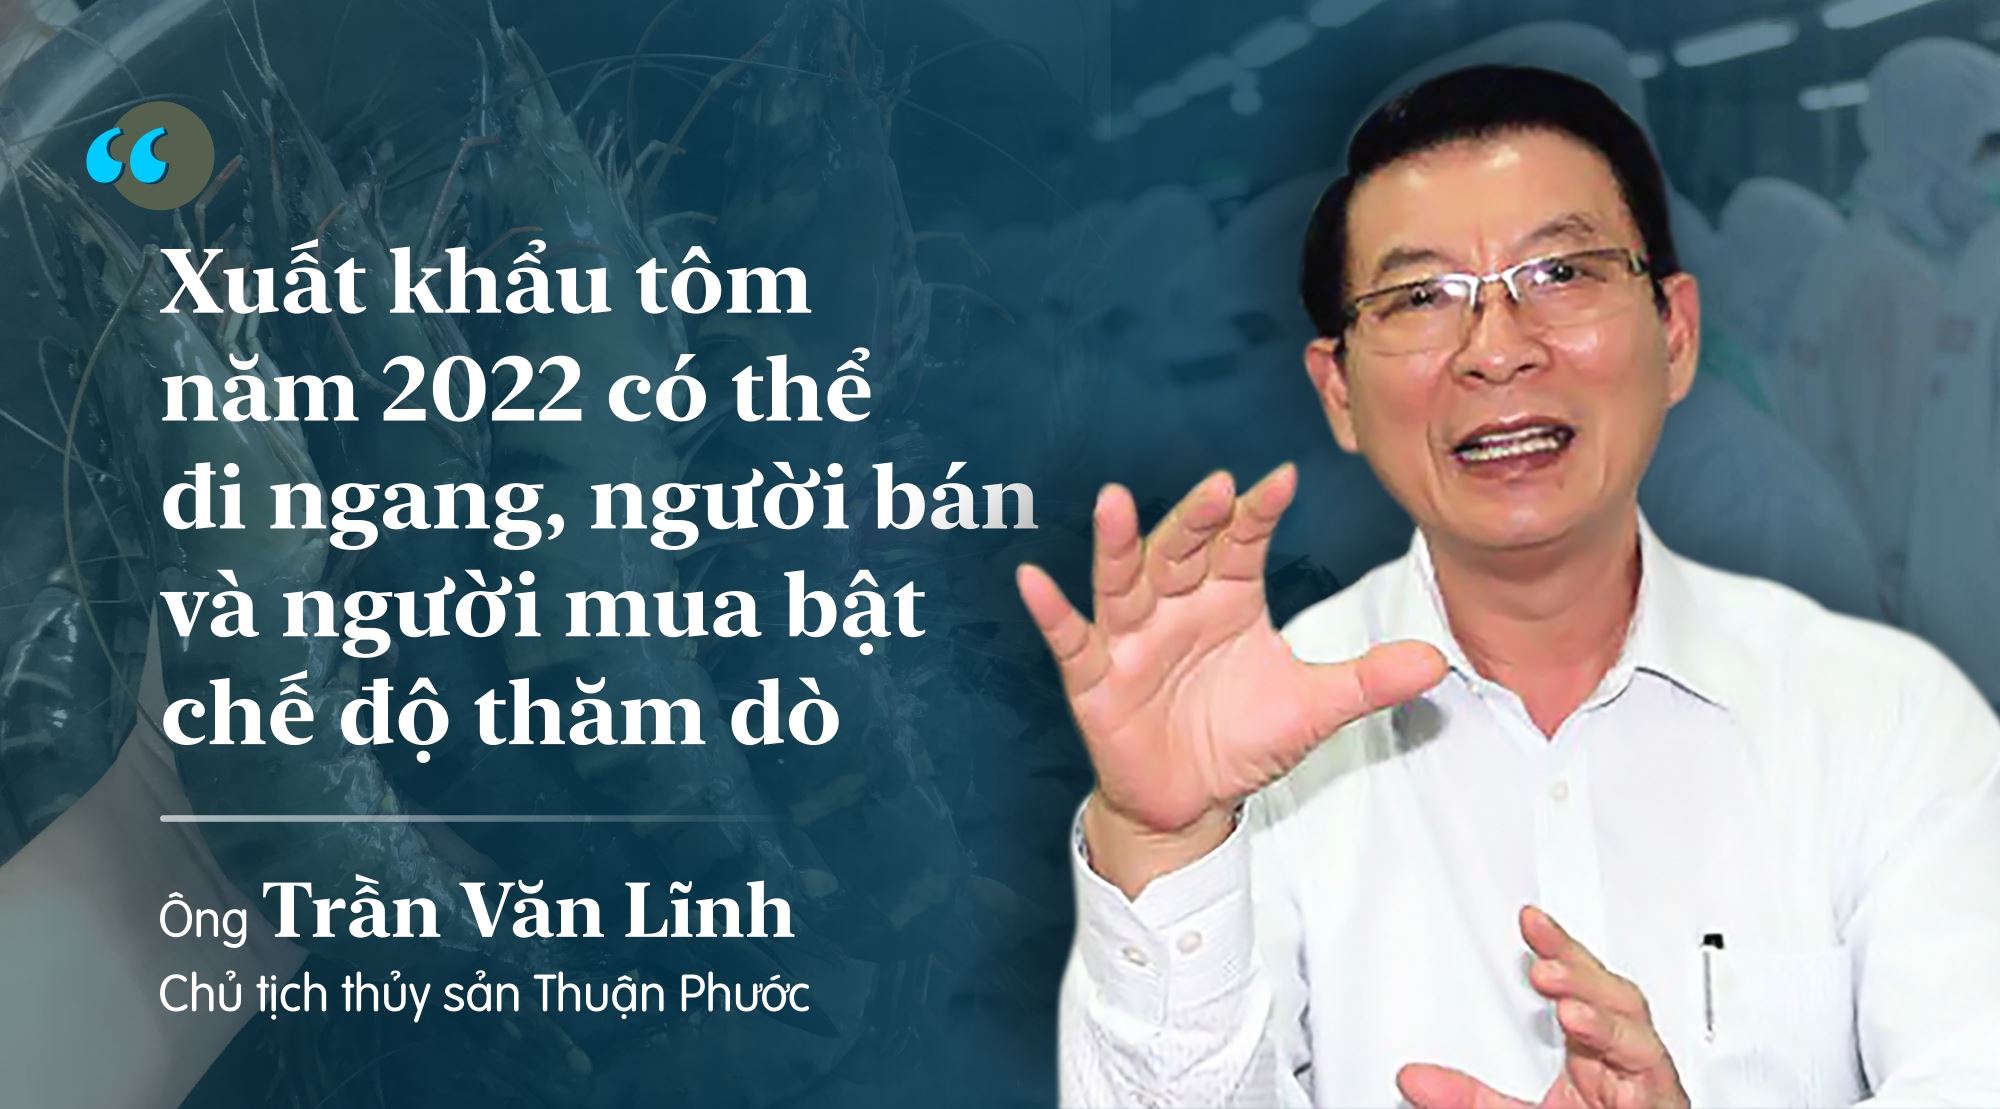 Chủ tịch thủy sản Thuận Phước: Xuất khẩu tôm năm 2022 có thể đi ngang, người bán và người mua bật chế độ thăm dò - Ảnh 2.